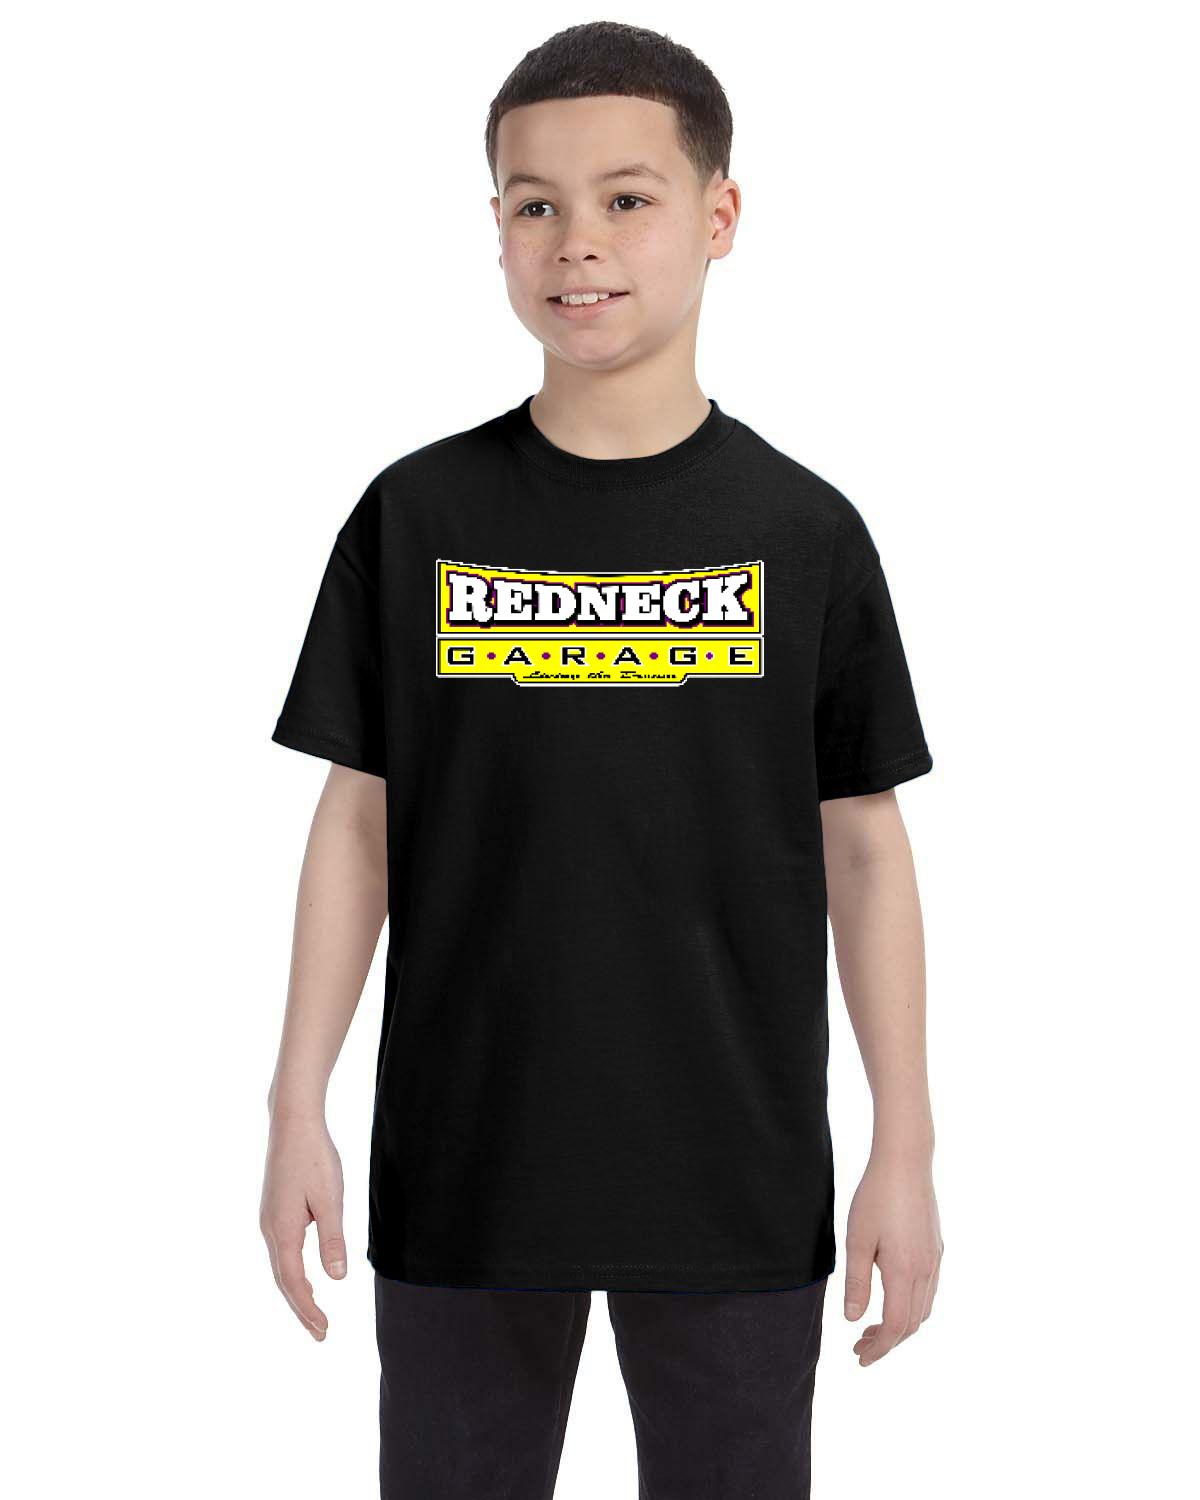 Redneck Garage Kid's T-Shirt